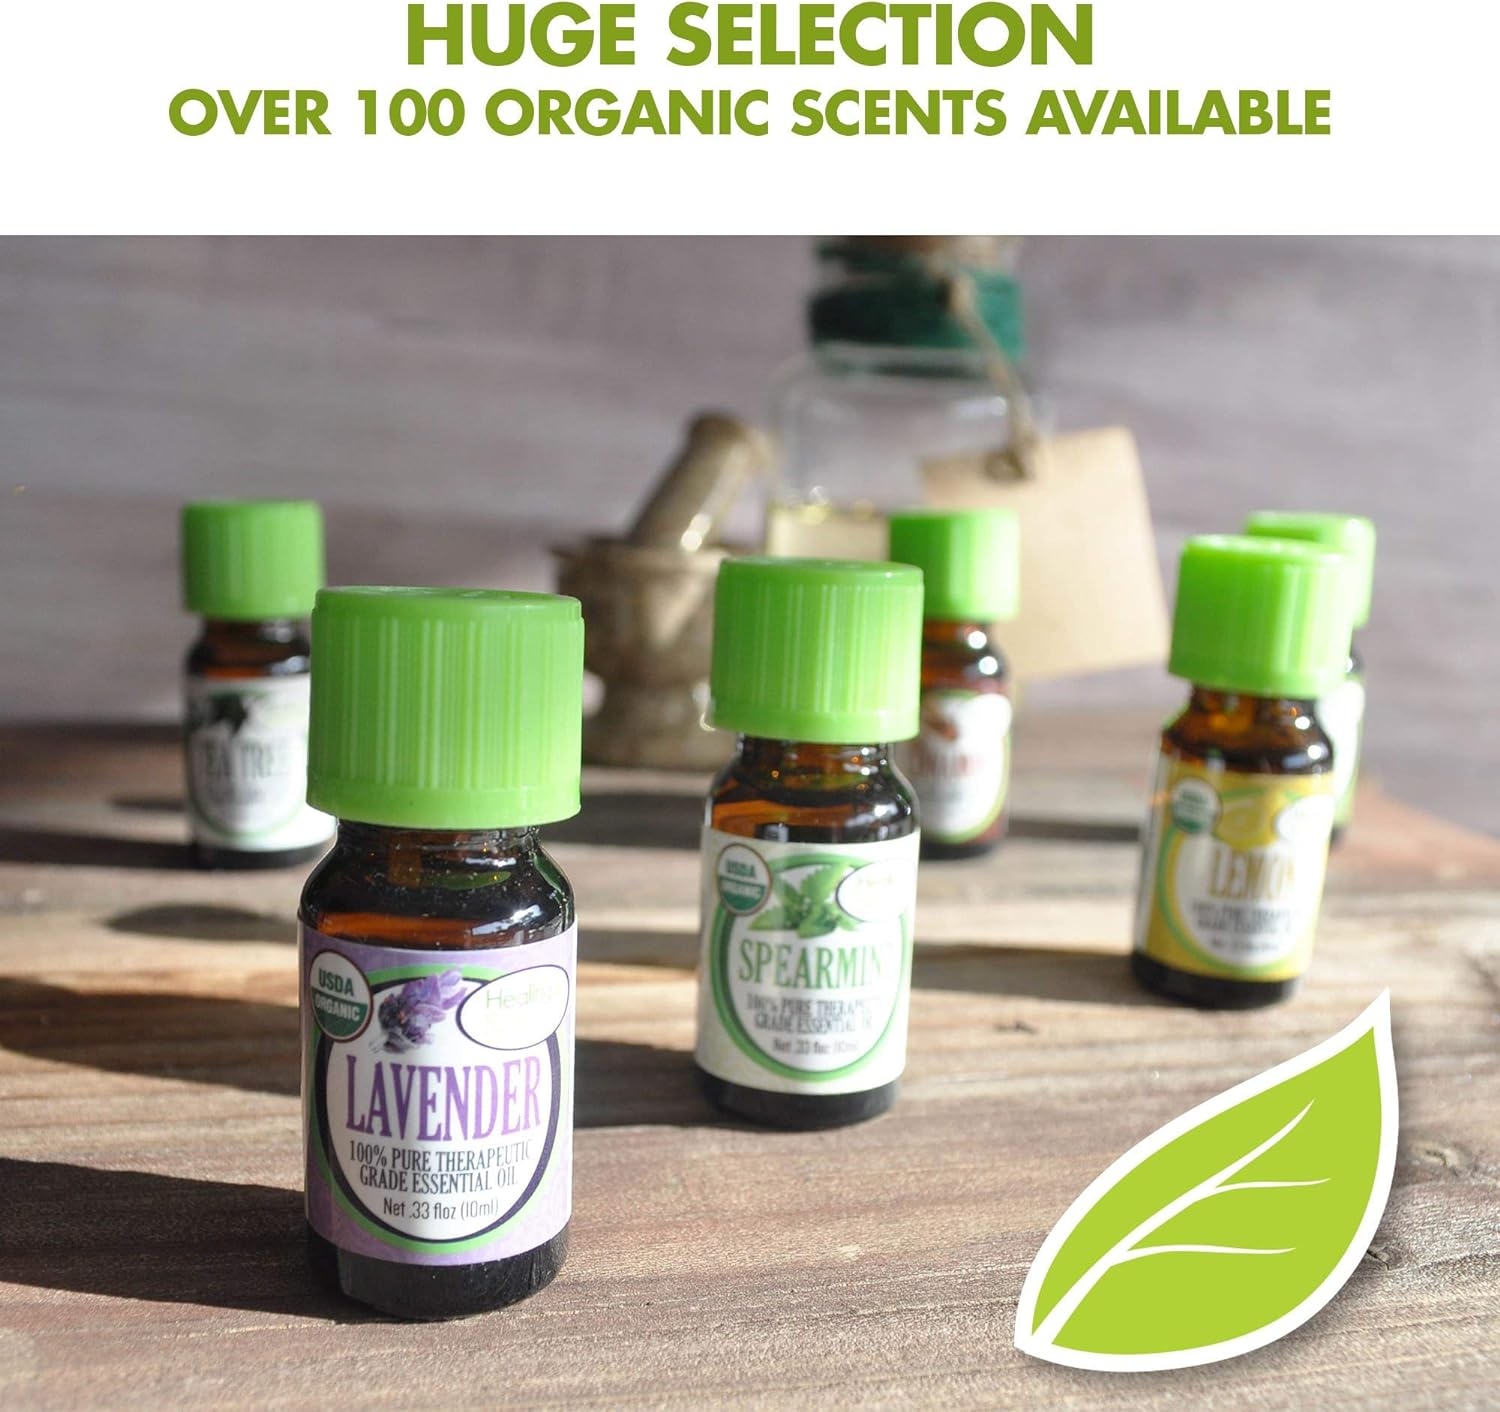 Healing Solutions Oils Blends 120ml - Good Sleep Blend Essential Oil - 4 Fluid Ounces